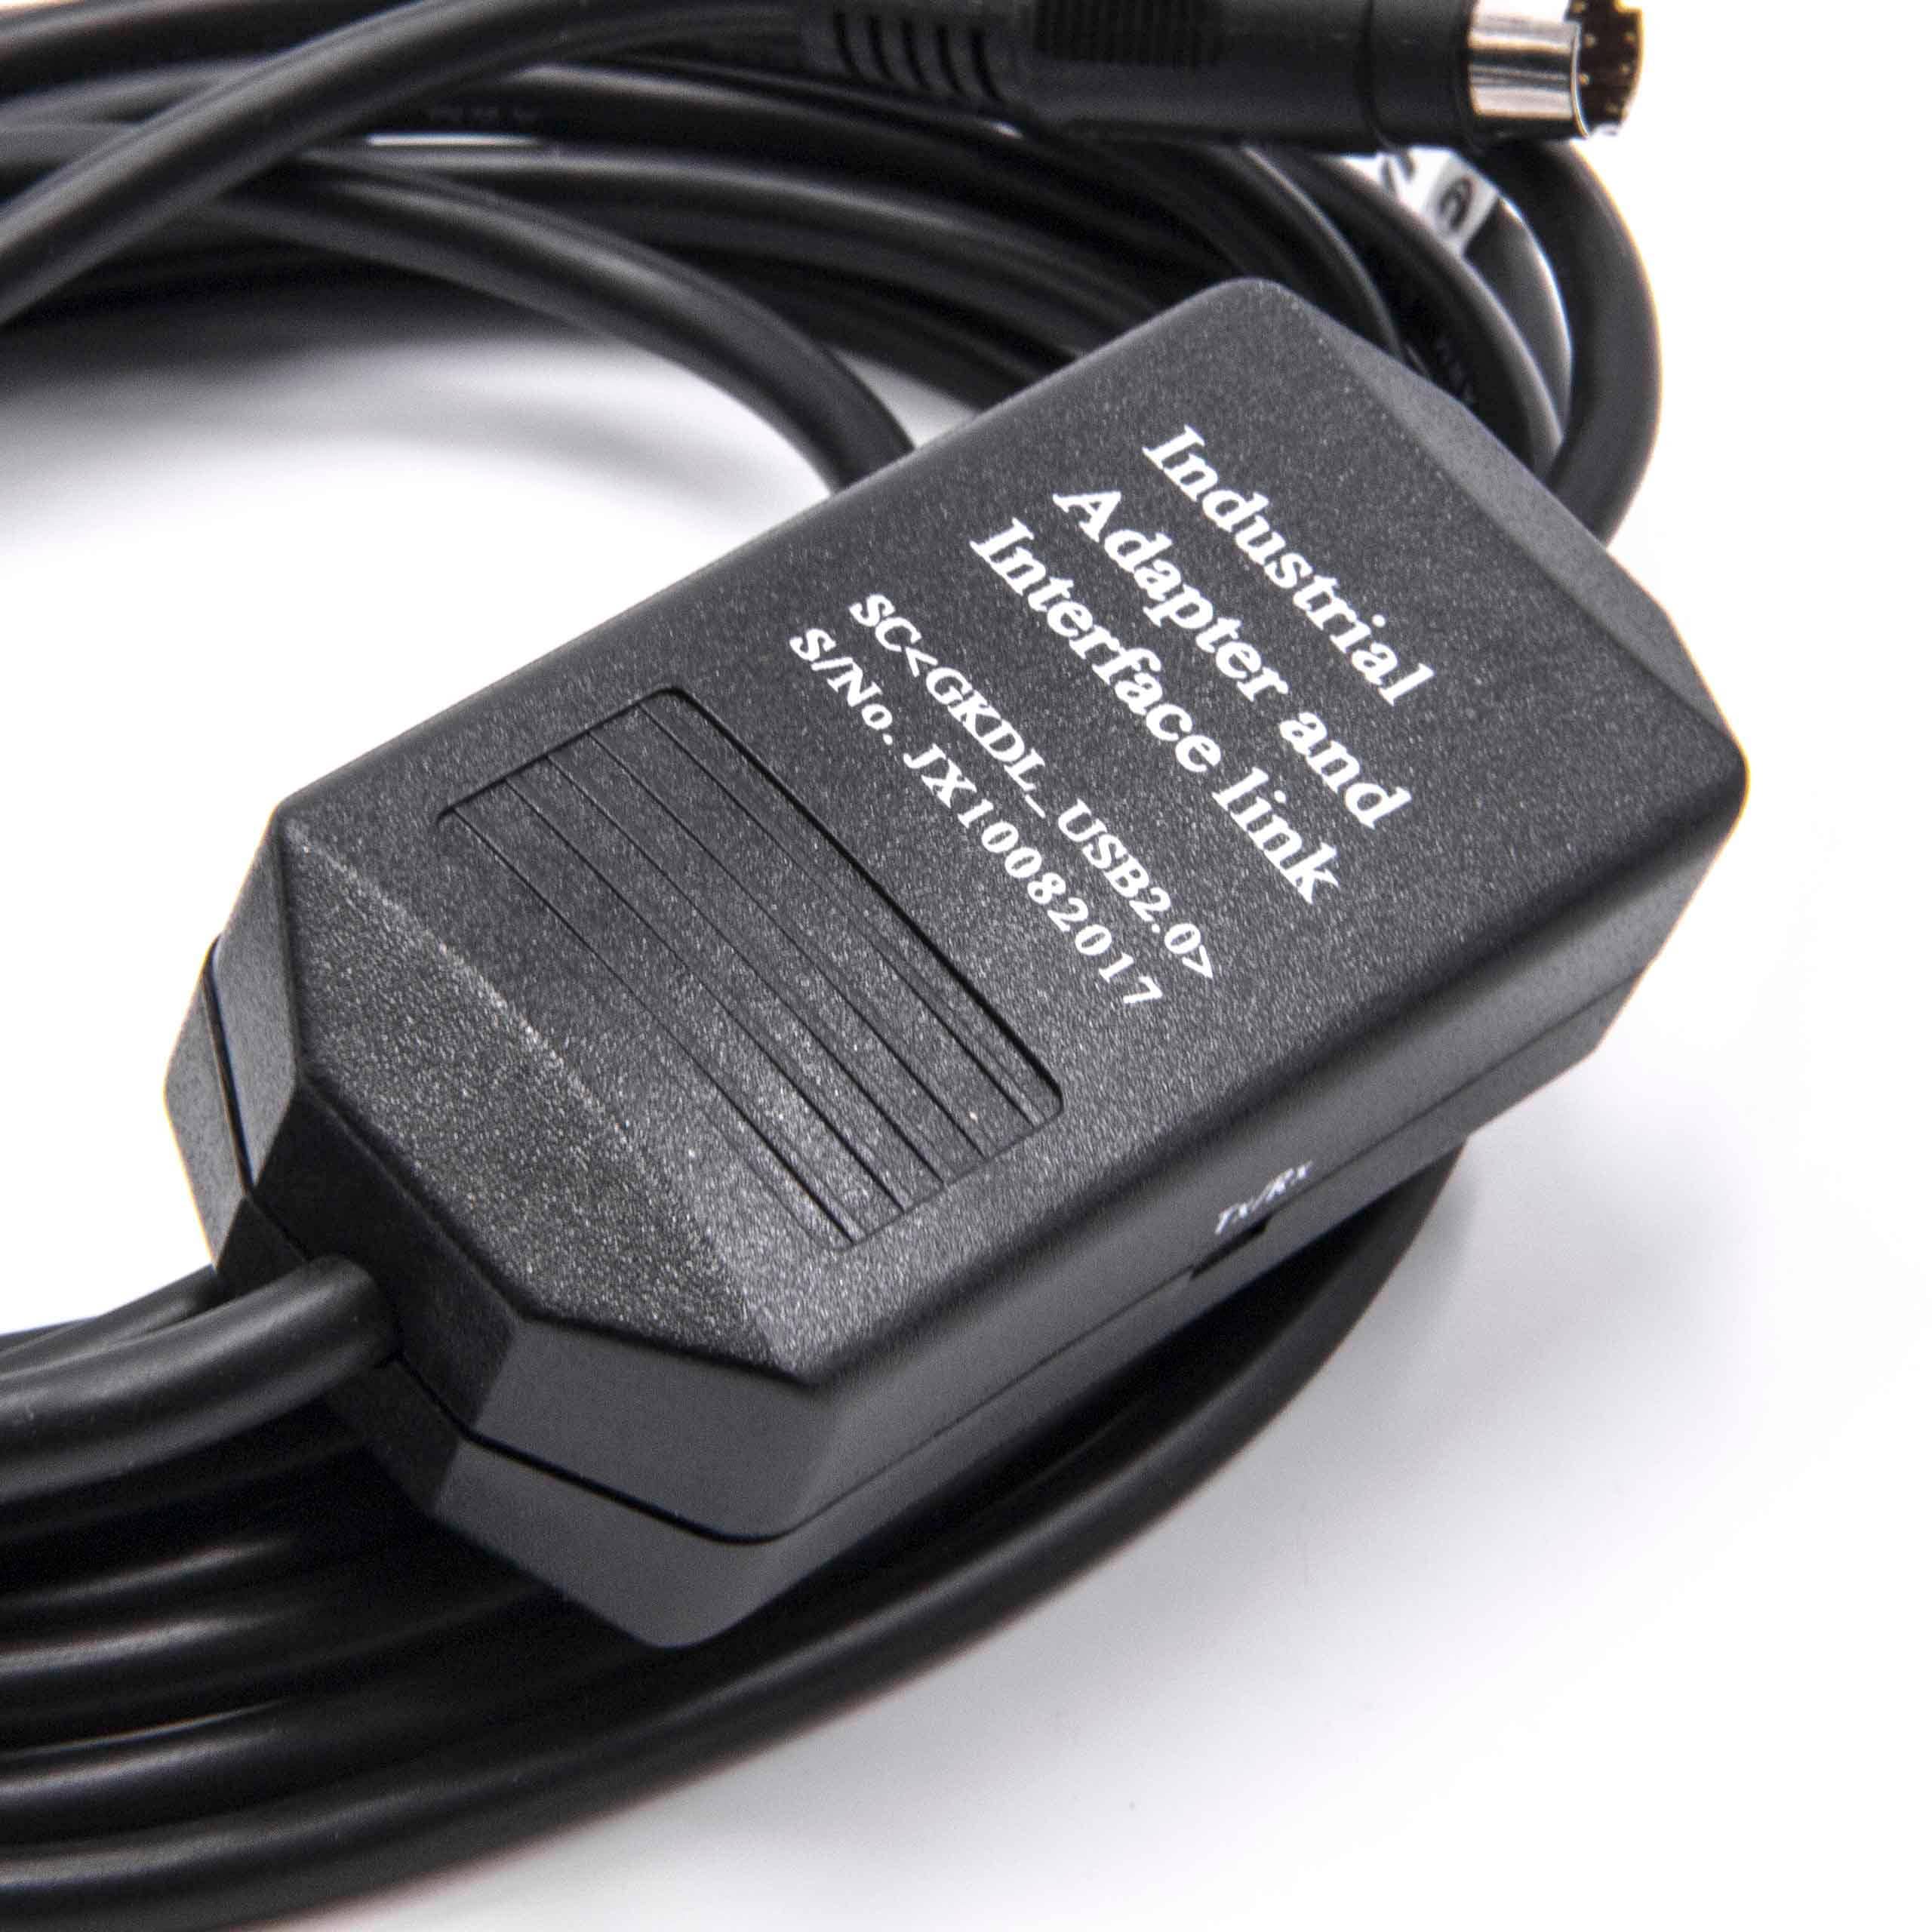 Câble de programmation remplace USB-1761-CBL-PM02 pour radio